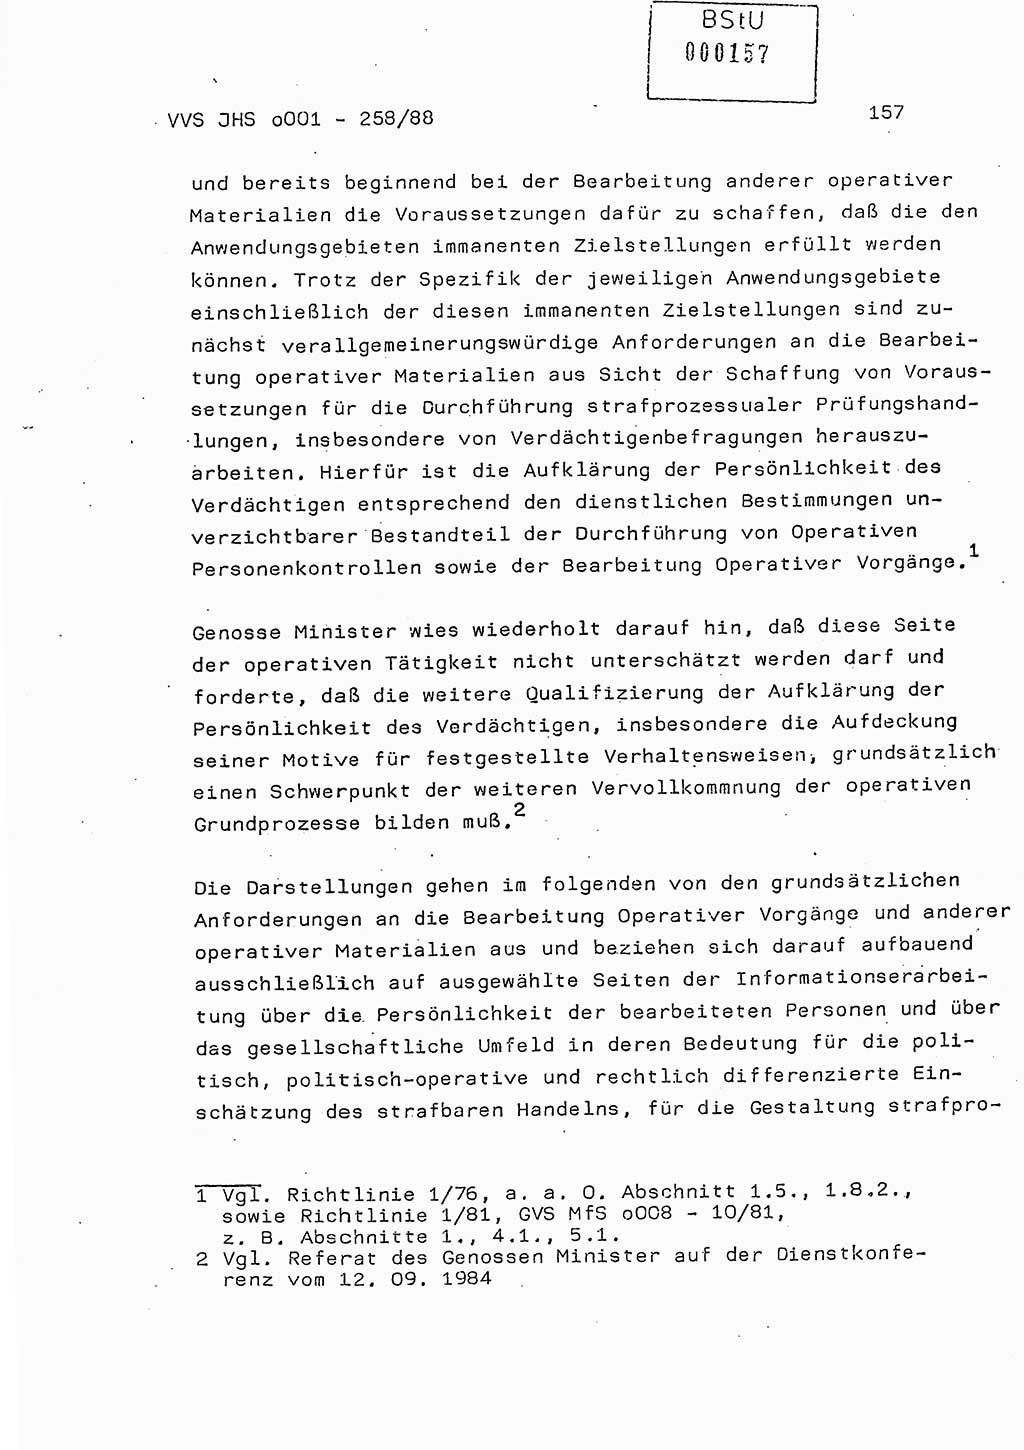 Dissertation, Oberleutnant Uwe Kärsten (JHS), Hauptmann Dr. Joachim Henkel (JHS), Oberstleutnant Werner Mählitz (Leiter der Abt. Ⅸ BV Rostock), Oberstleutnant Jürgen Tröge (HA Ⅸ/AKG), Oberstleutnant Winfried Ziegler (HA Ⅸ/9), Major Wolf-Rüdiger Wurzler (JHS), Ministerium für Staatssicherheit (MfS) [Deutsche Demokratische Republik (DDR)], Juristische Hochschule (JHS), Vertrauliche Verschlußsache (VVS) o001-258/88, Potsdam 1988, Seite 157 (Diss. MfS DDR JHS VVS o001-258/88 1988, S. 157)